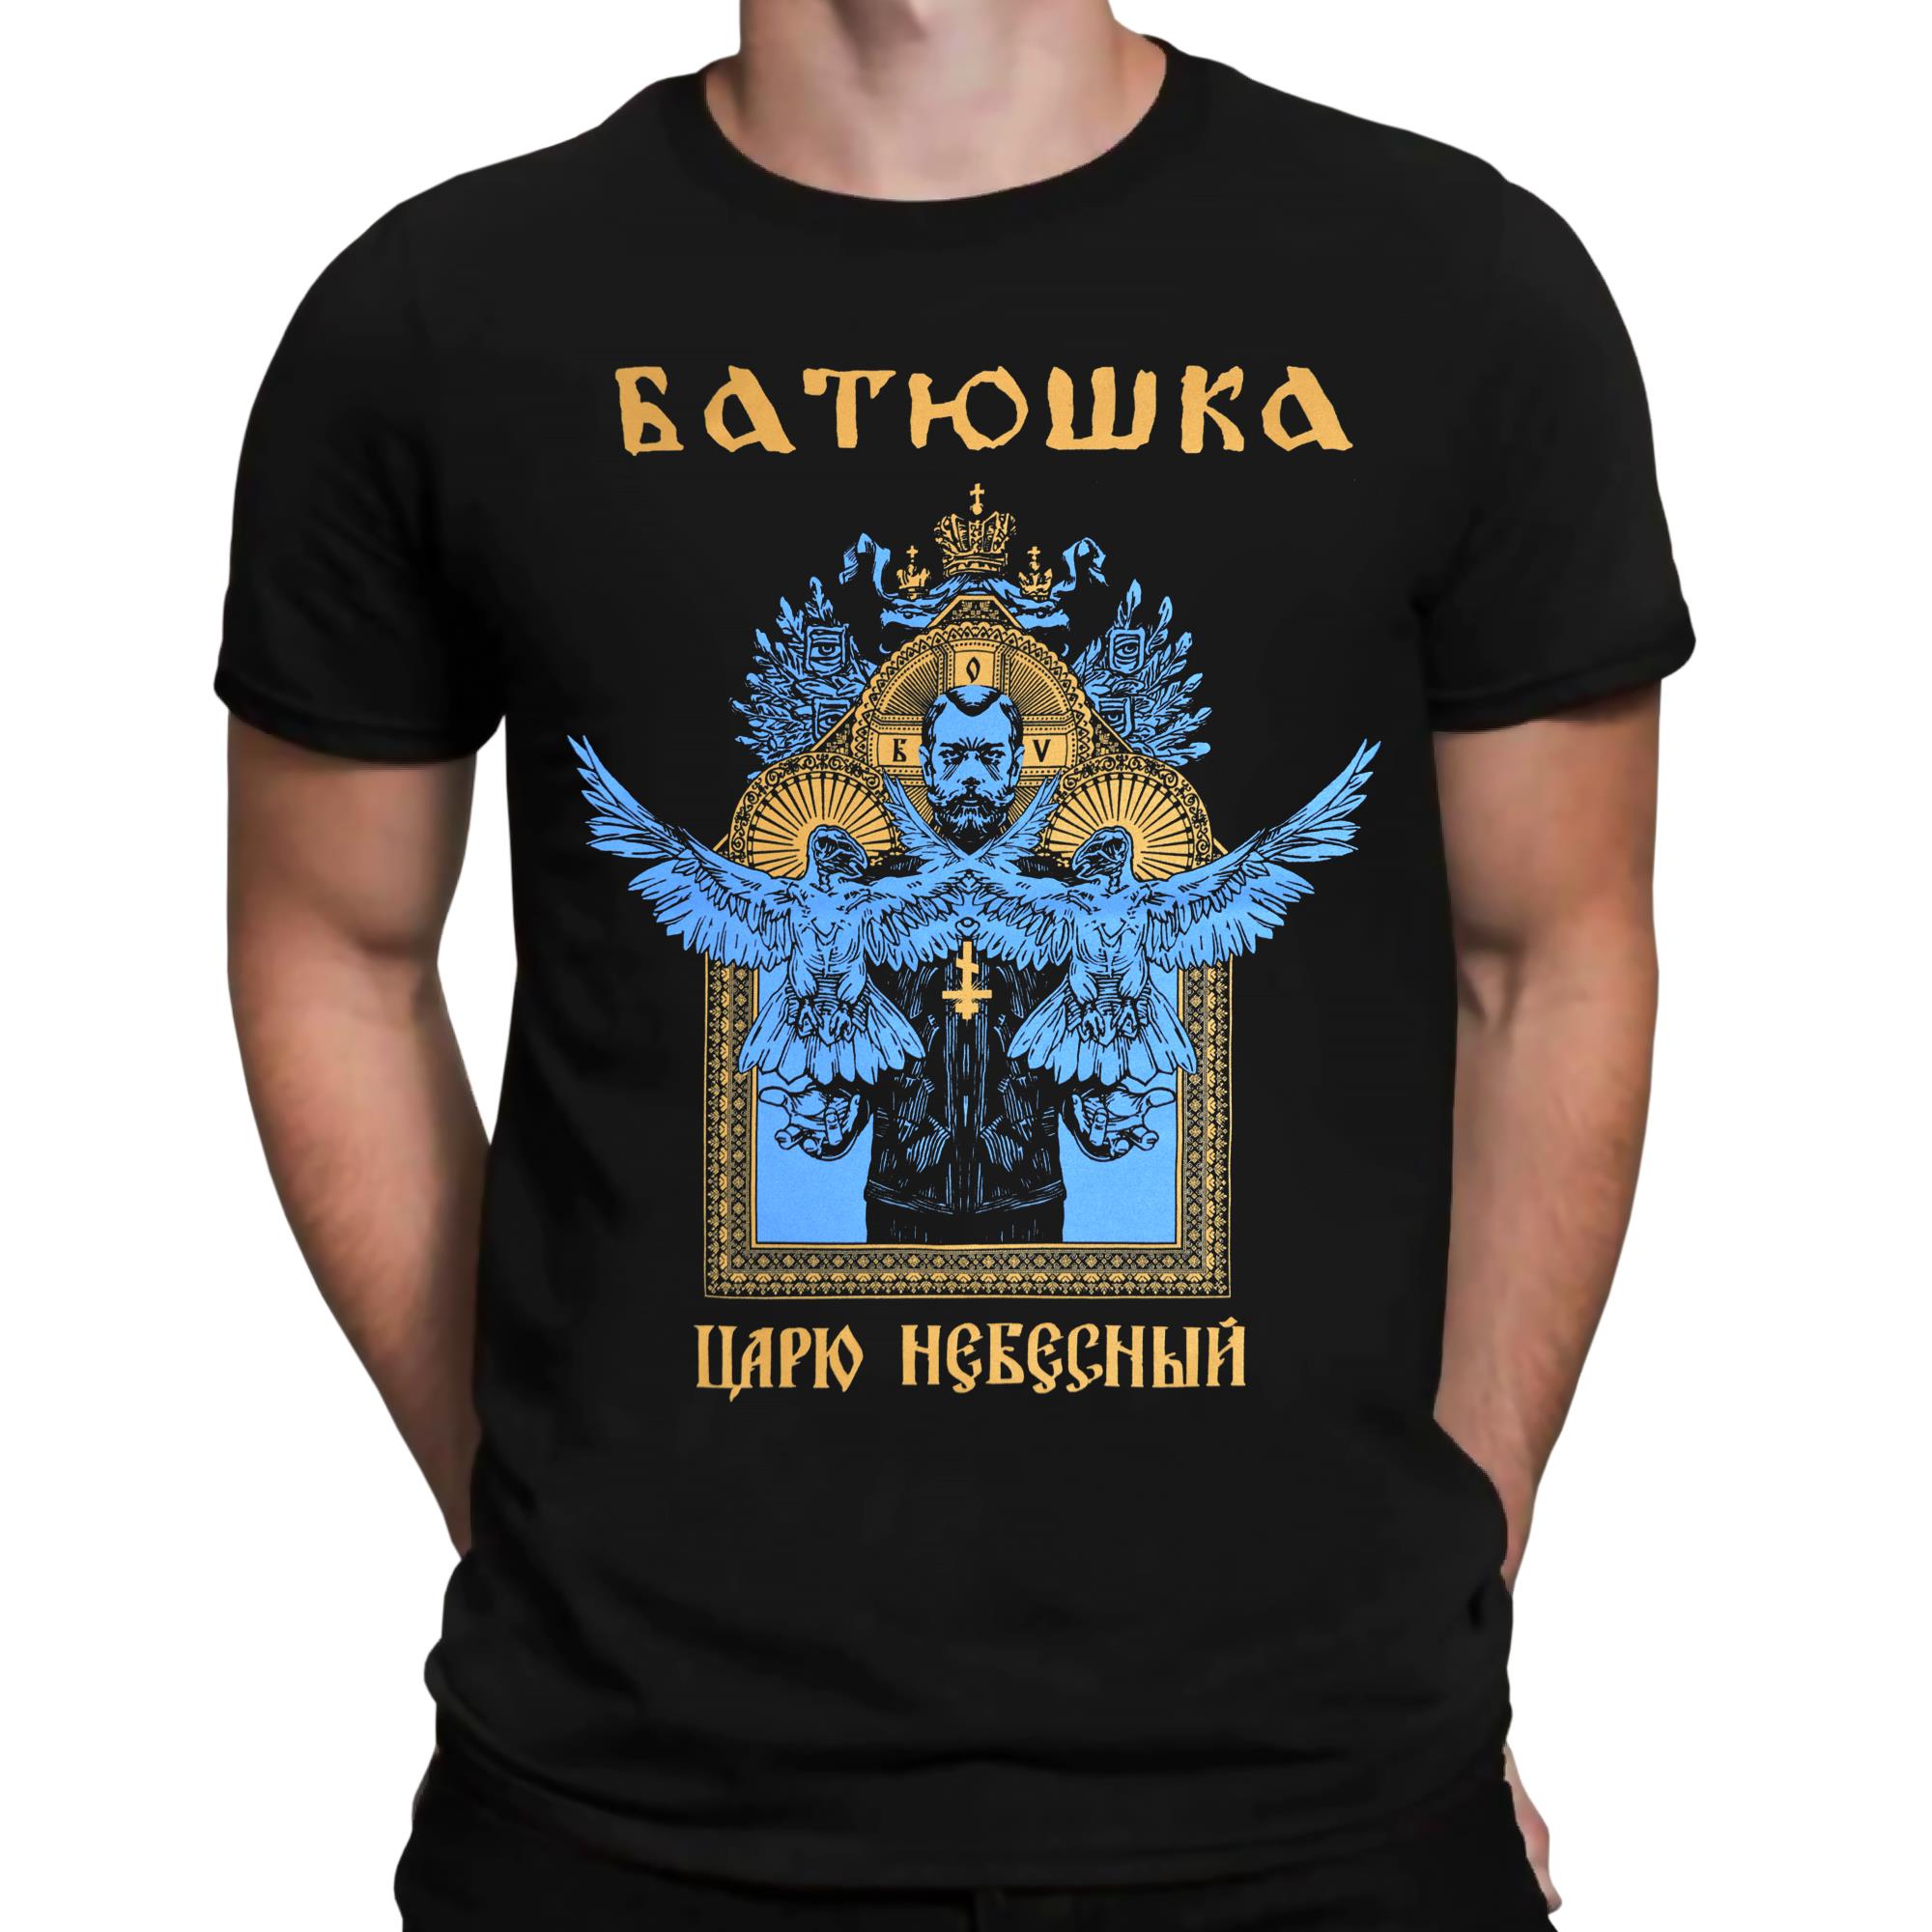 Carju Niebiesnyj T-Shirt